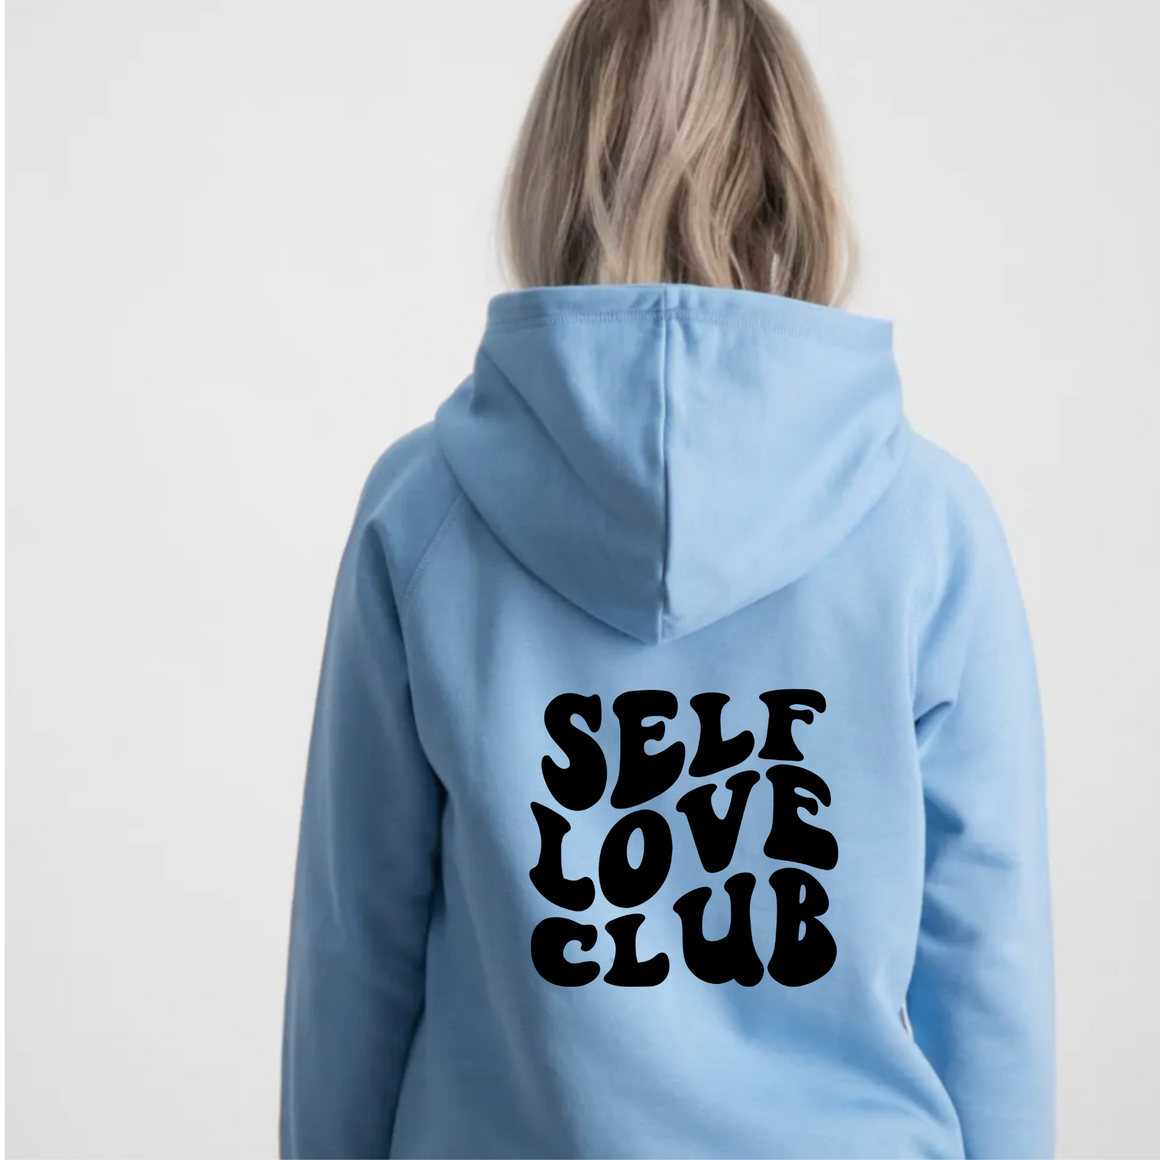 Self Love Club Hoodie Youth - Posh & Cozy